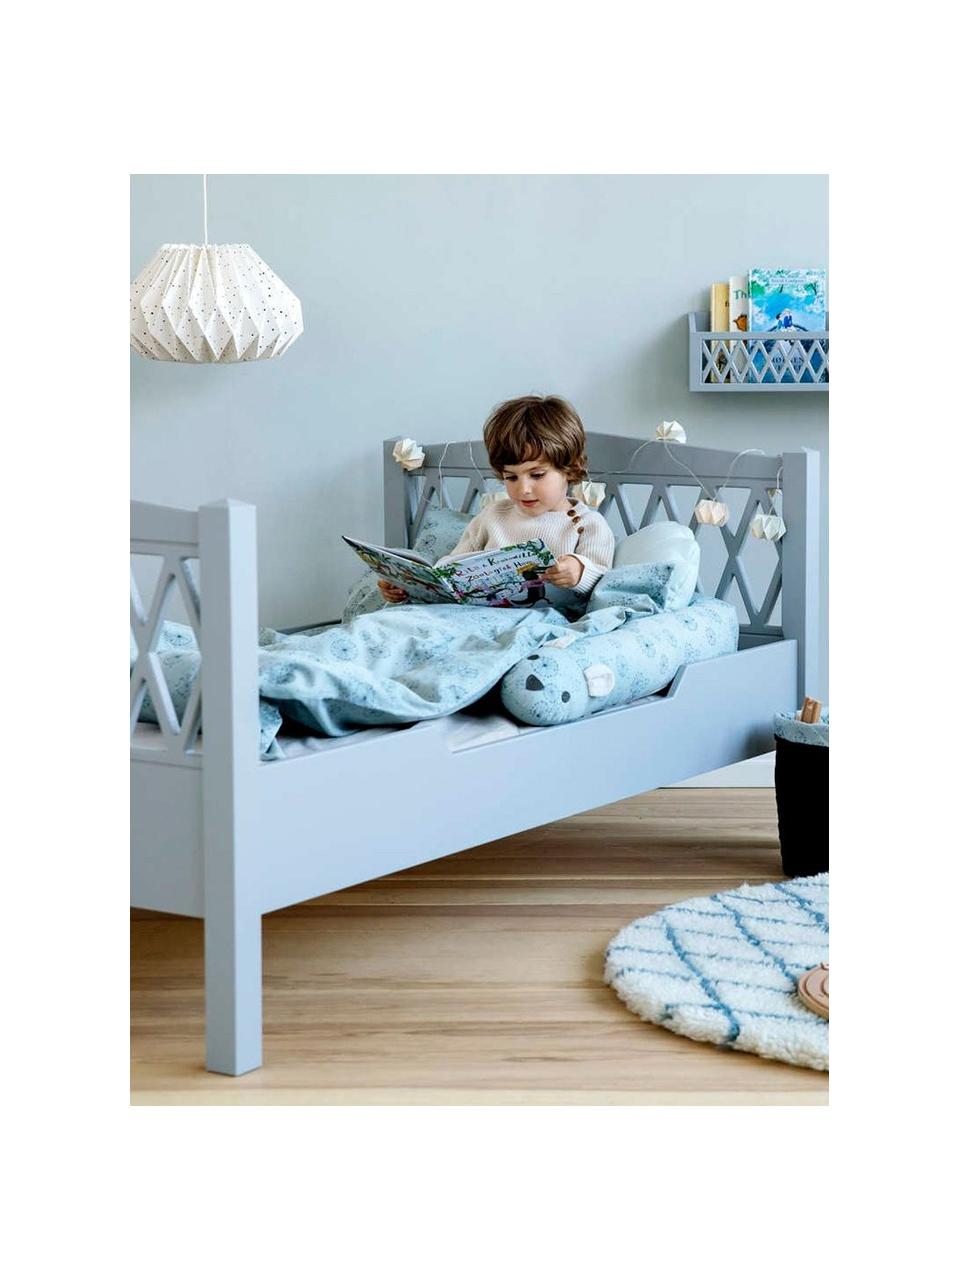 Dřevěná dětská postel Harlequin, Borovicové dřevo, dřevovláknitá deska se střední hustotou (MDF), natřená barvou bez VOC, Šedá, Š 100 cm